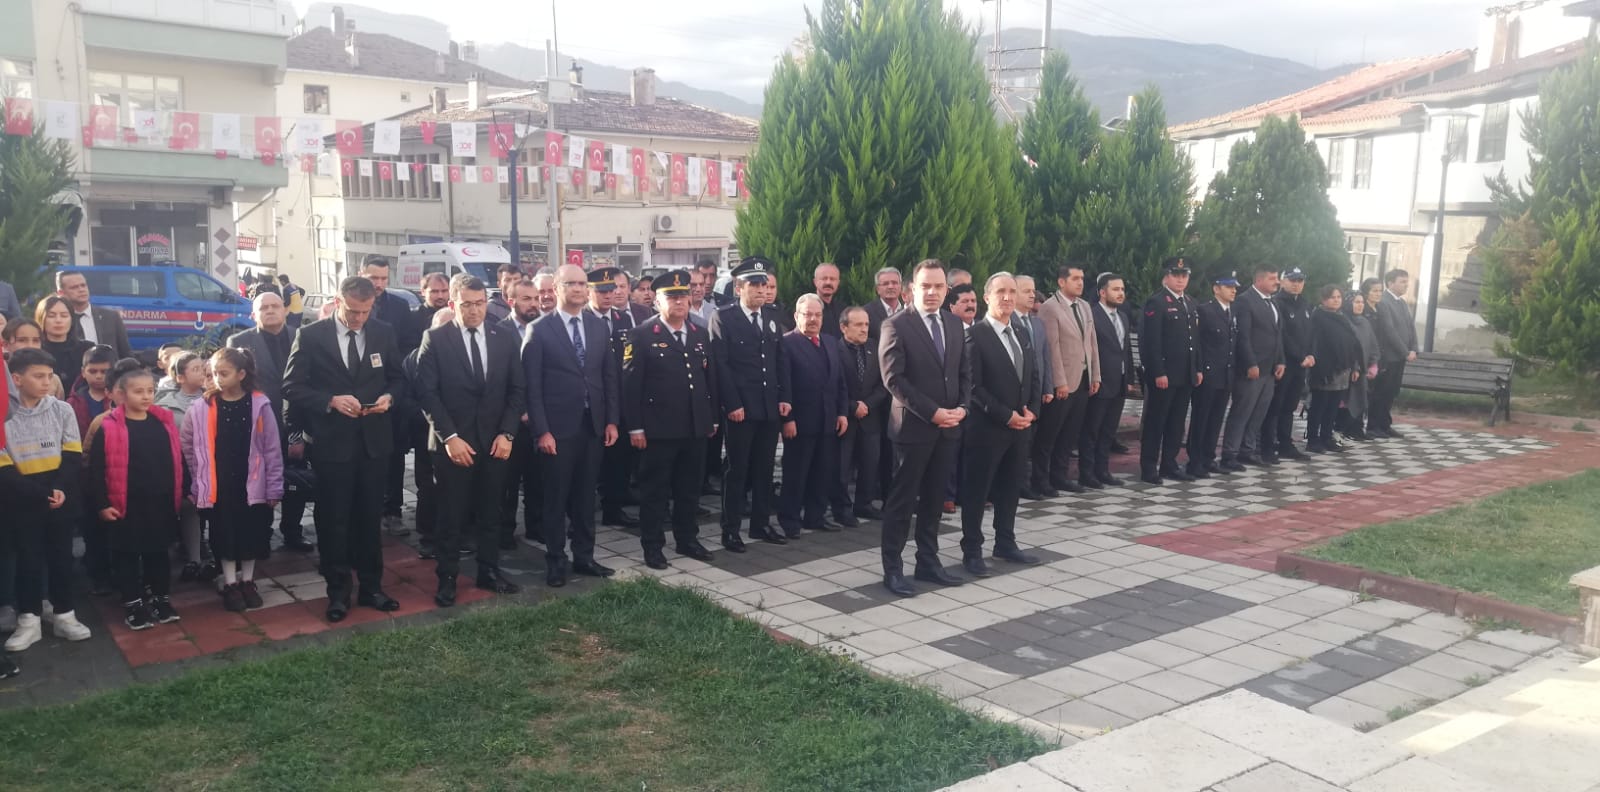 Kastamonu’da Büyük Önder Atatürk anıldı